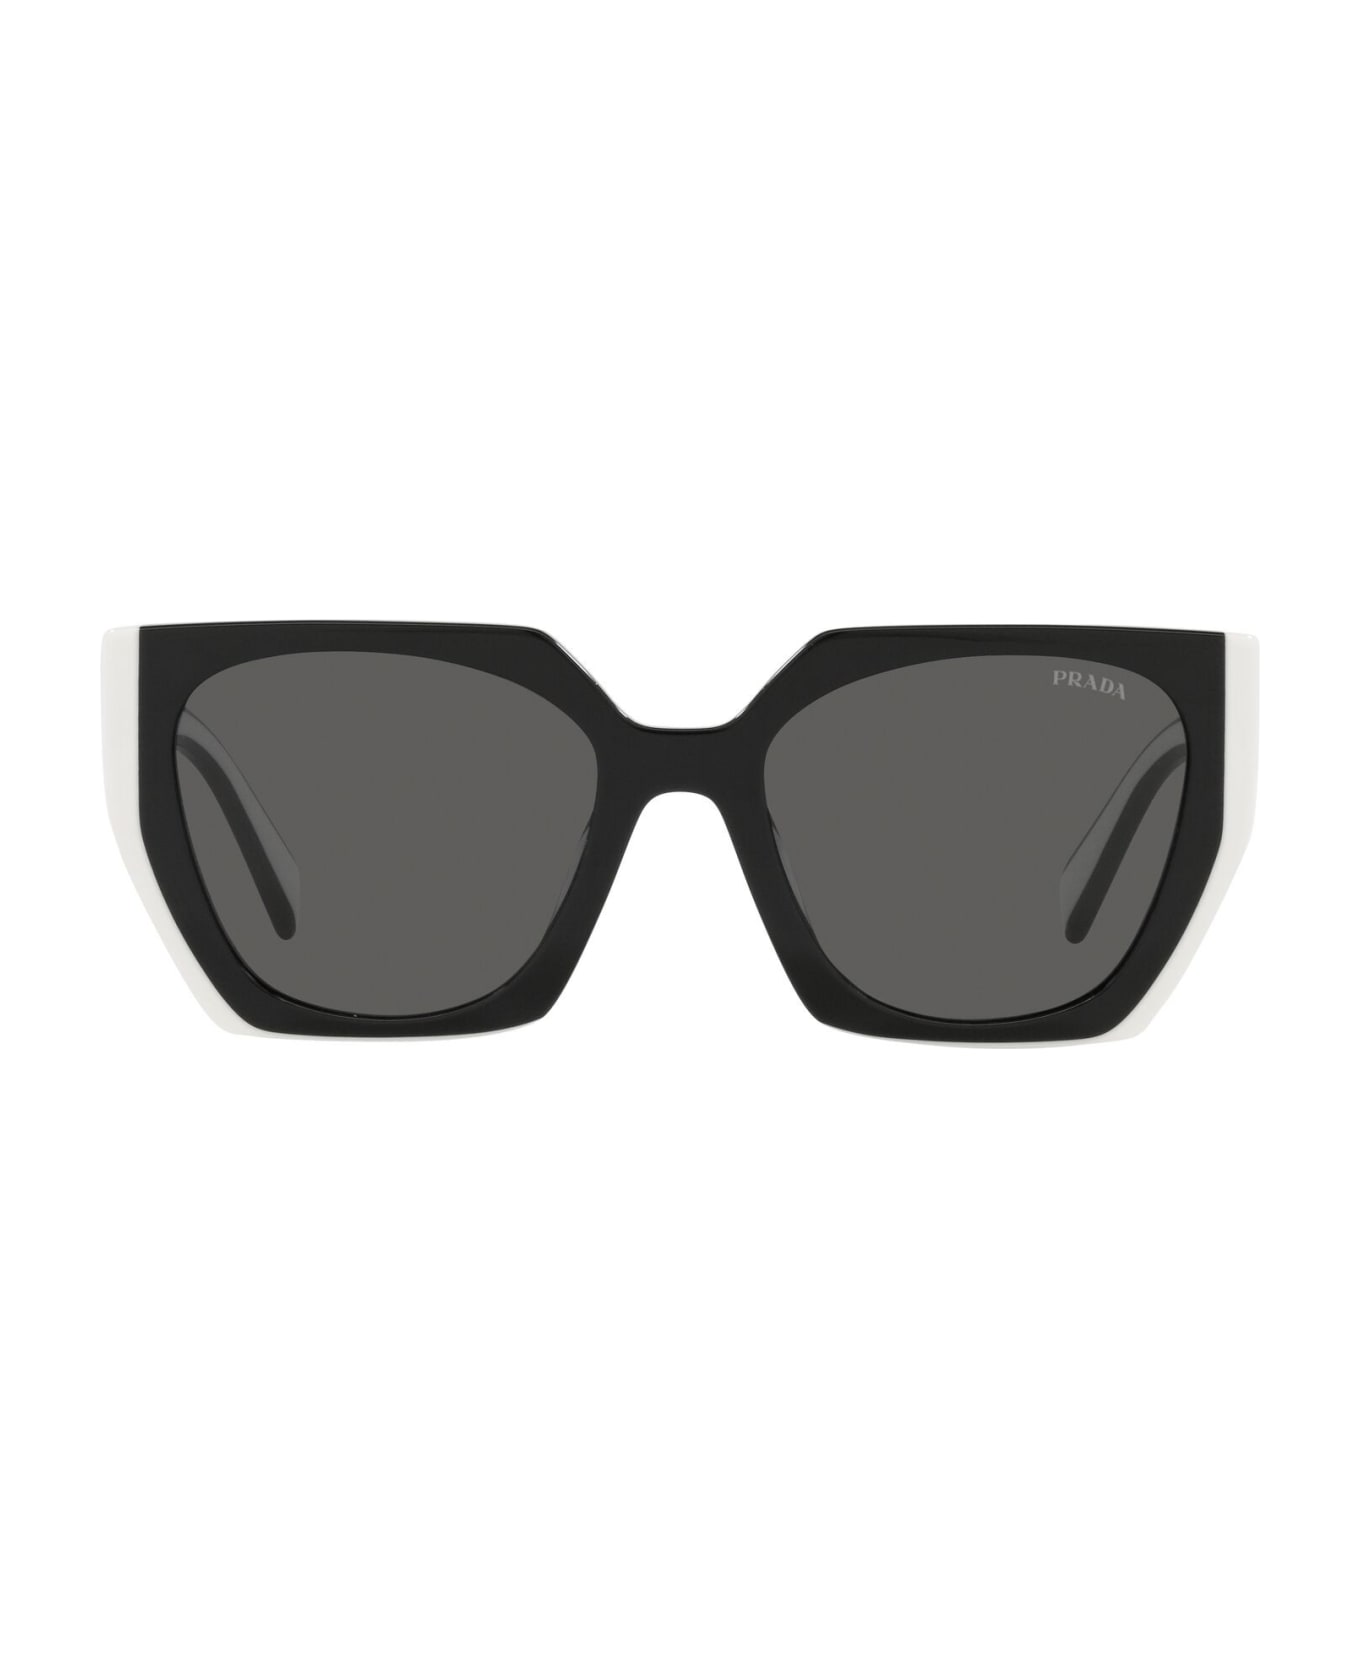 Prada Eyewear neon Sunglasses - Nero/Nero